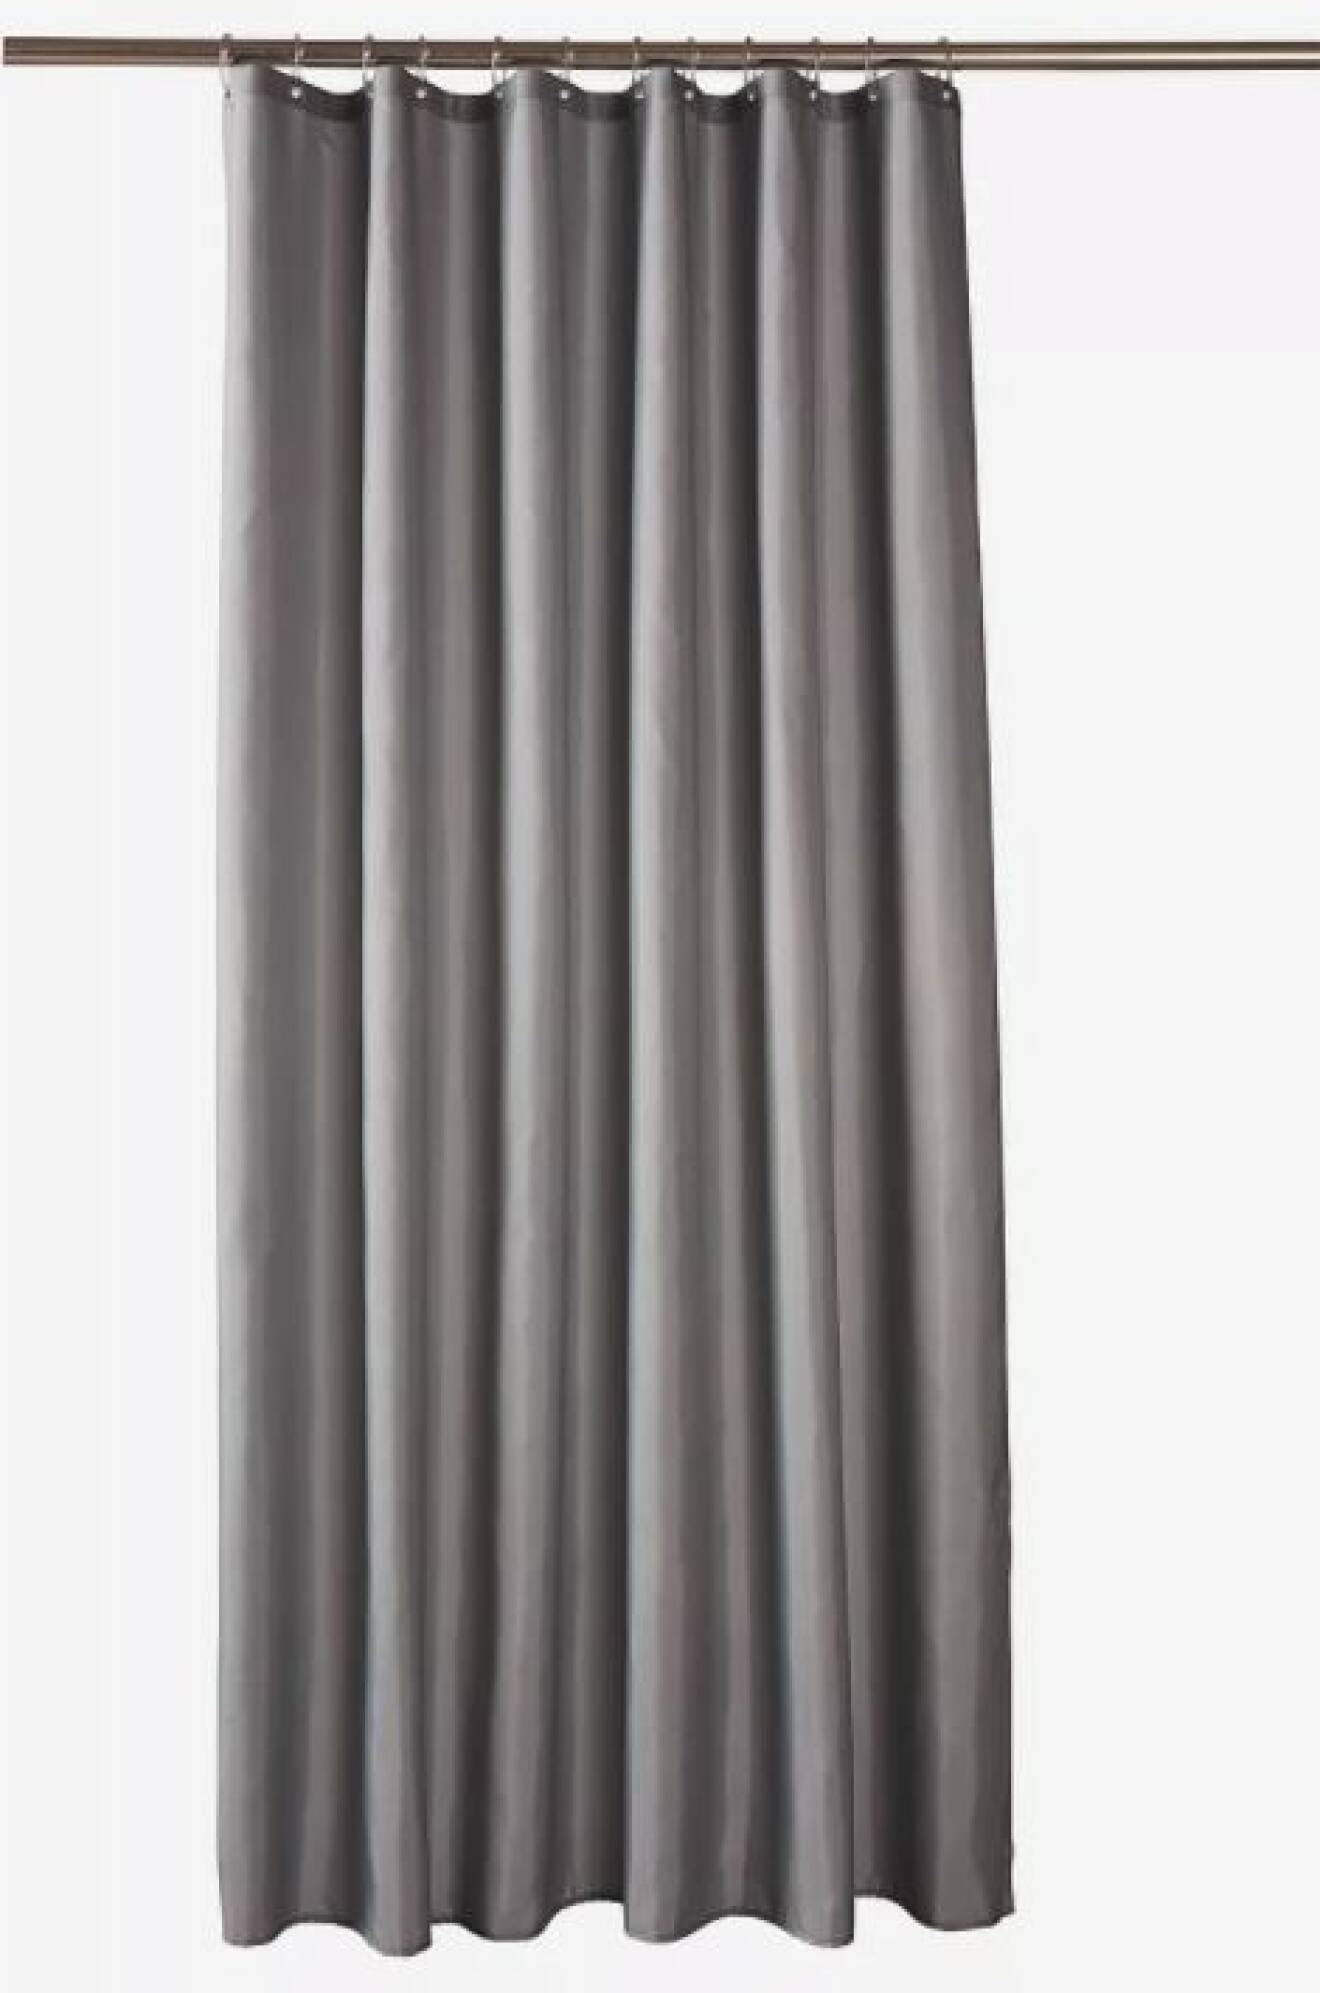 grått draperi till badrummet i glansig polyester från Jotex